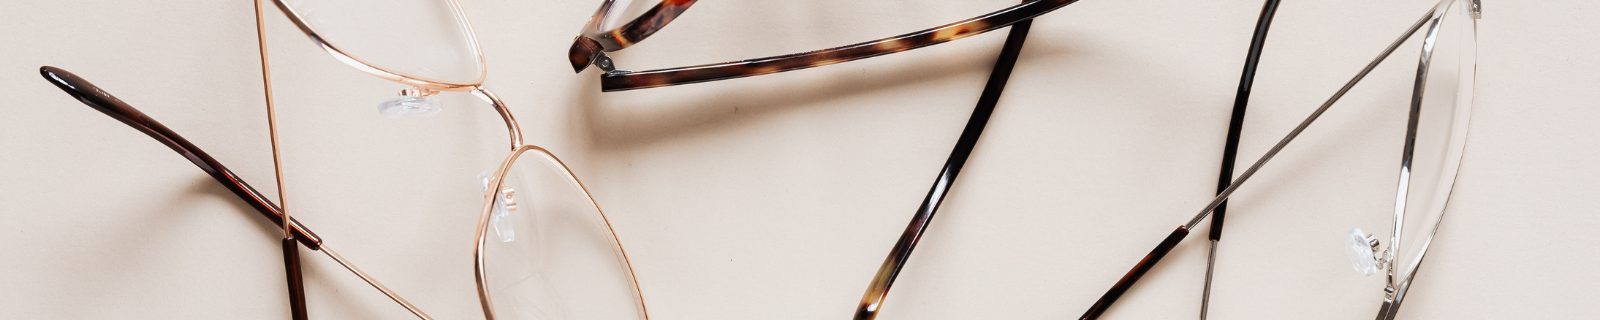 Comment réparer des verres de lunettes de soleil rayés - OPTIQUE  DISTRIBUTION / CHANGERMESVERRES